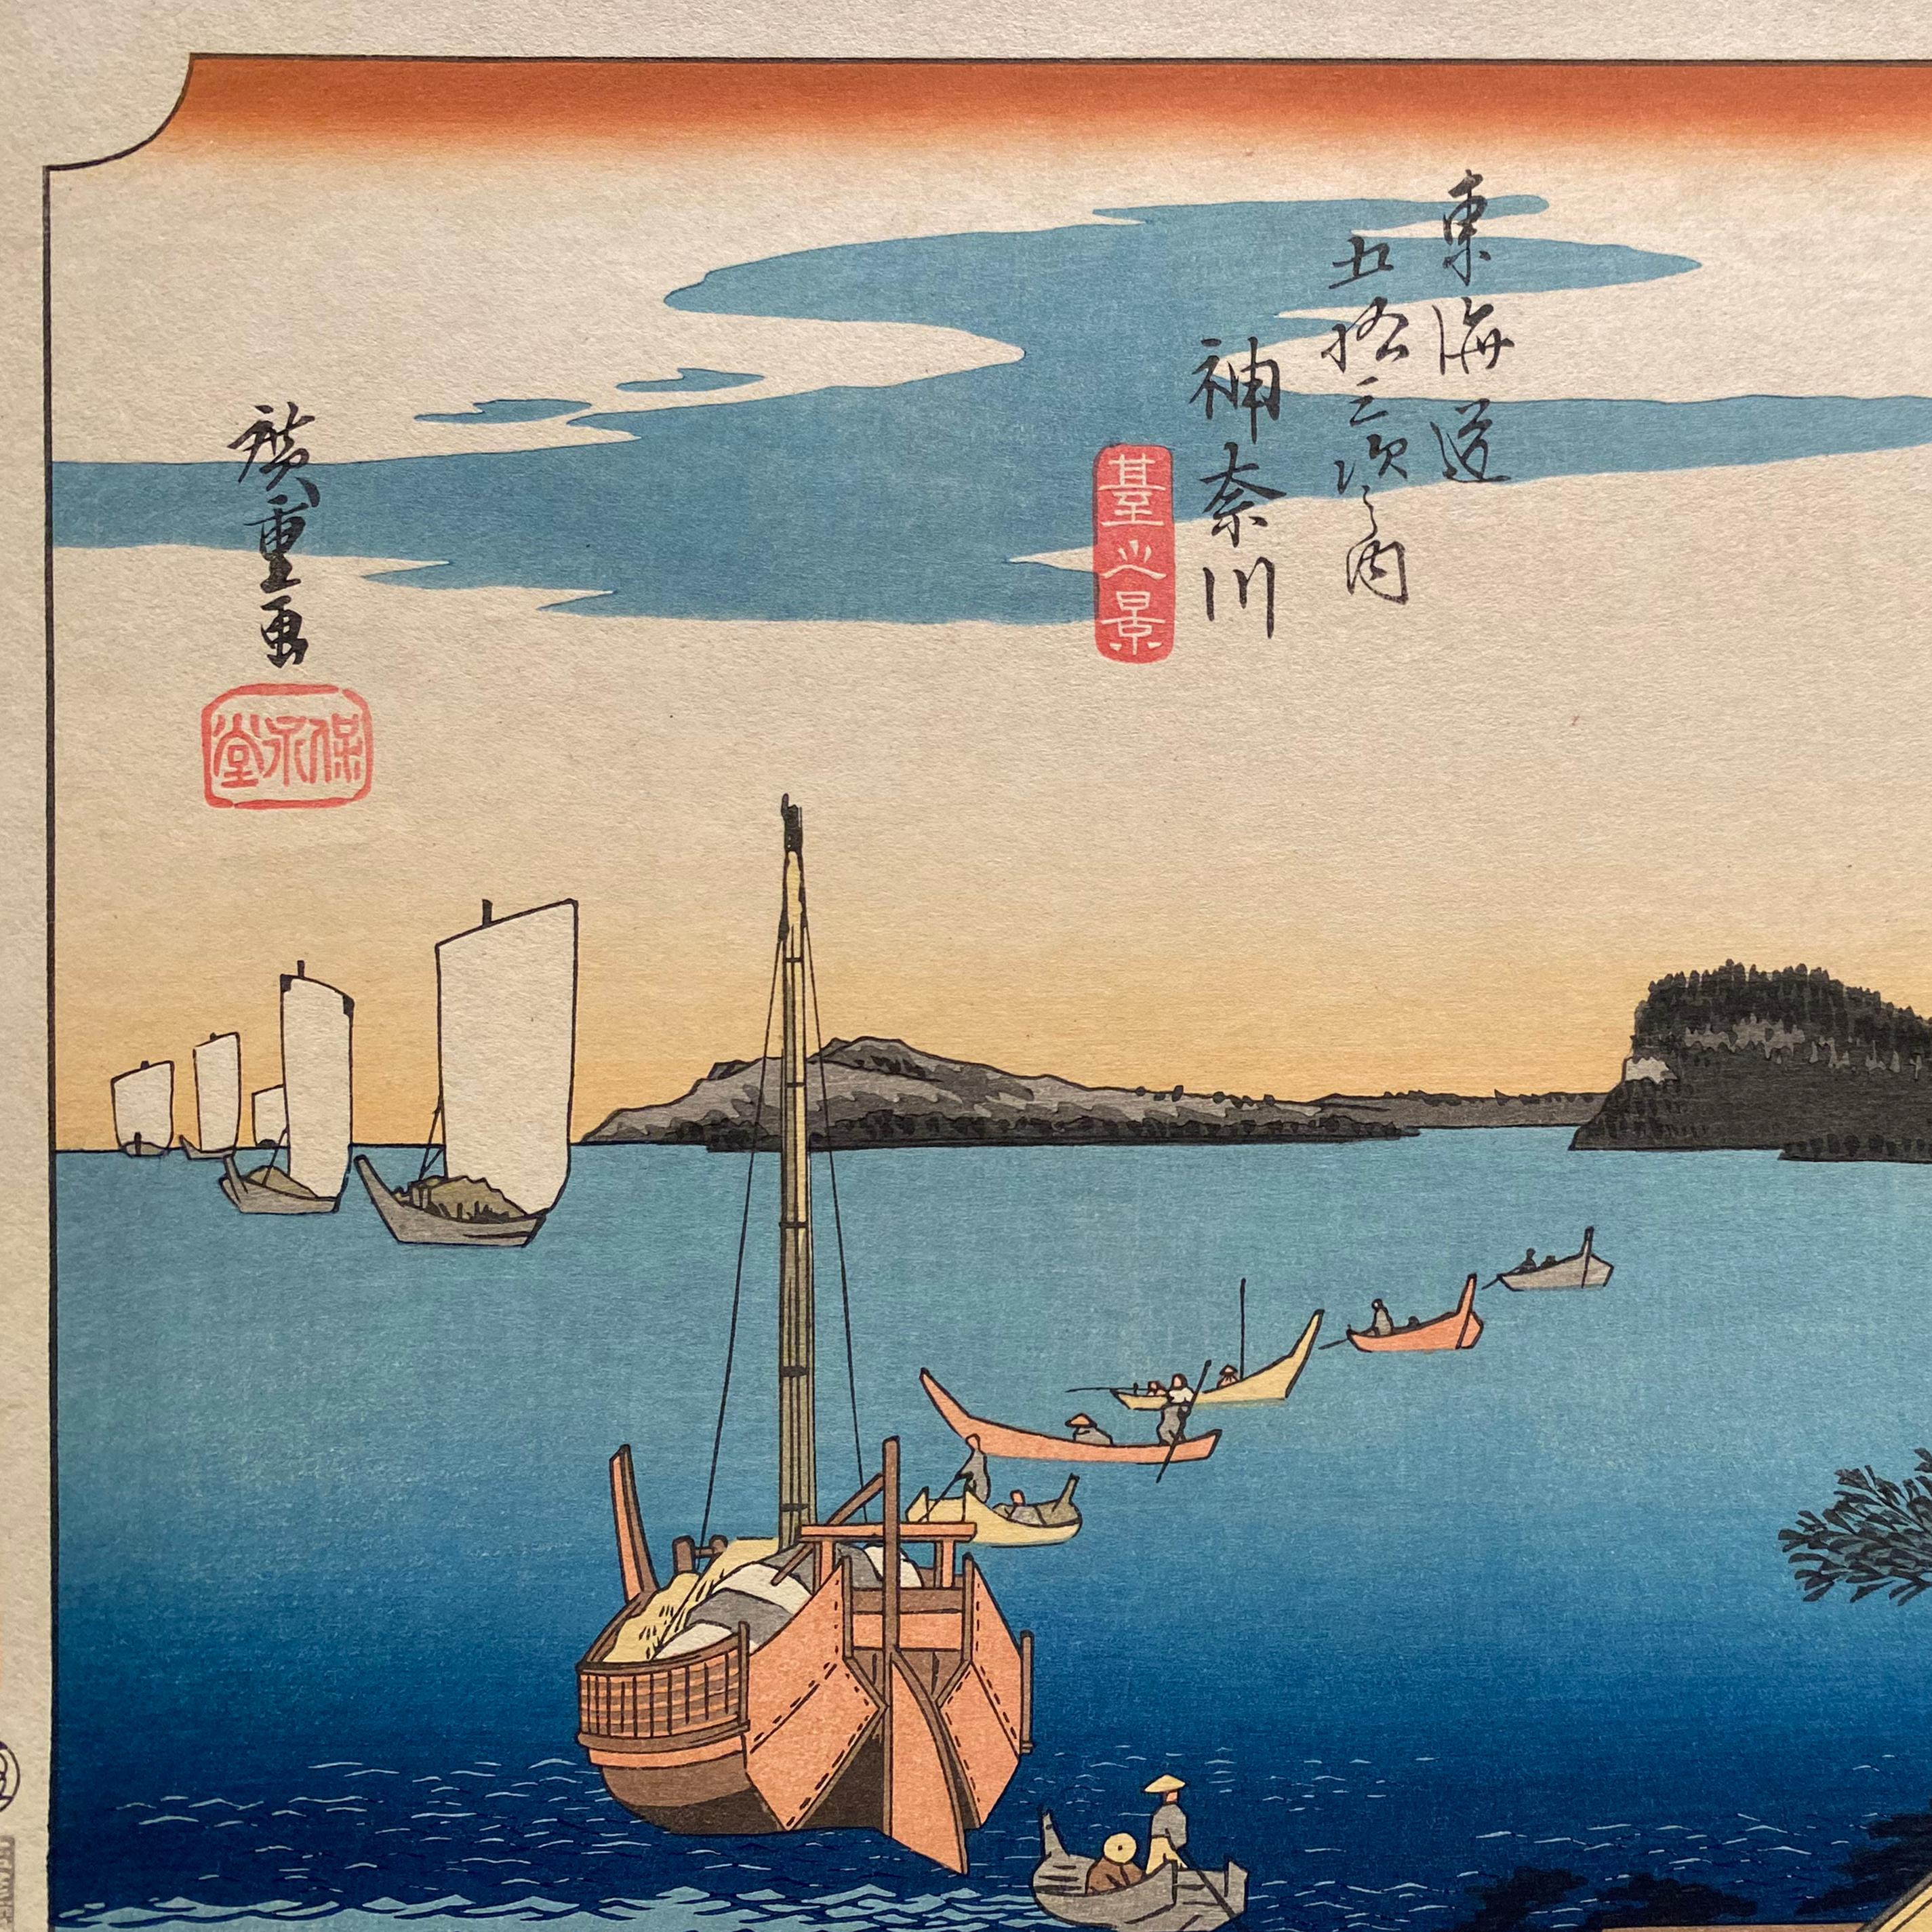 'A View of Kanagawa', After Utagawa Hiroshige 歌川廣重, Ukiyo-e Woodblock, Tokaido - Print by Utagawa Hiroshige (Ando Hiroshige)